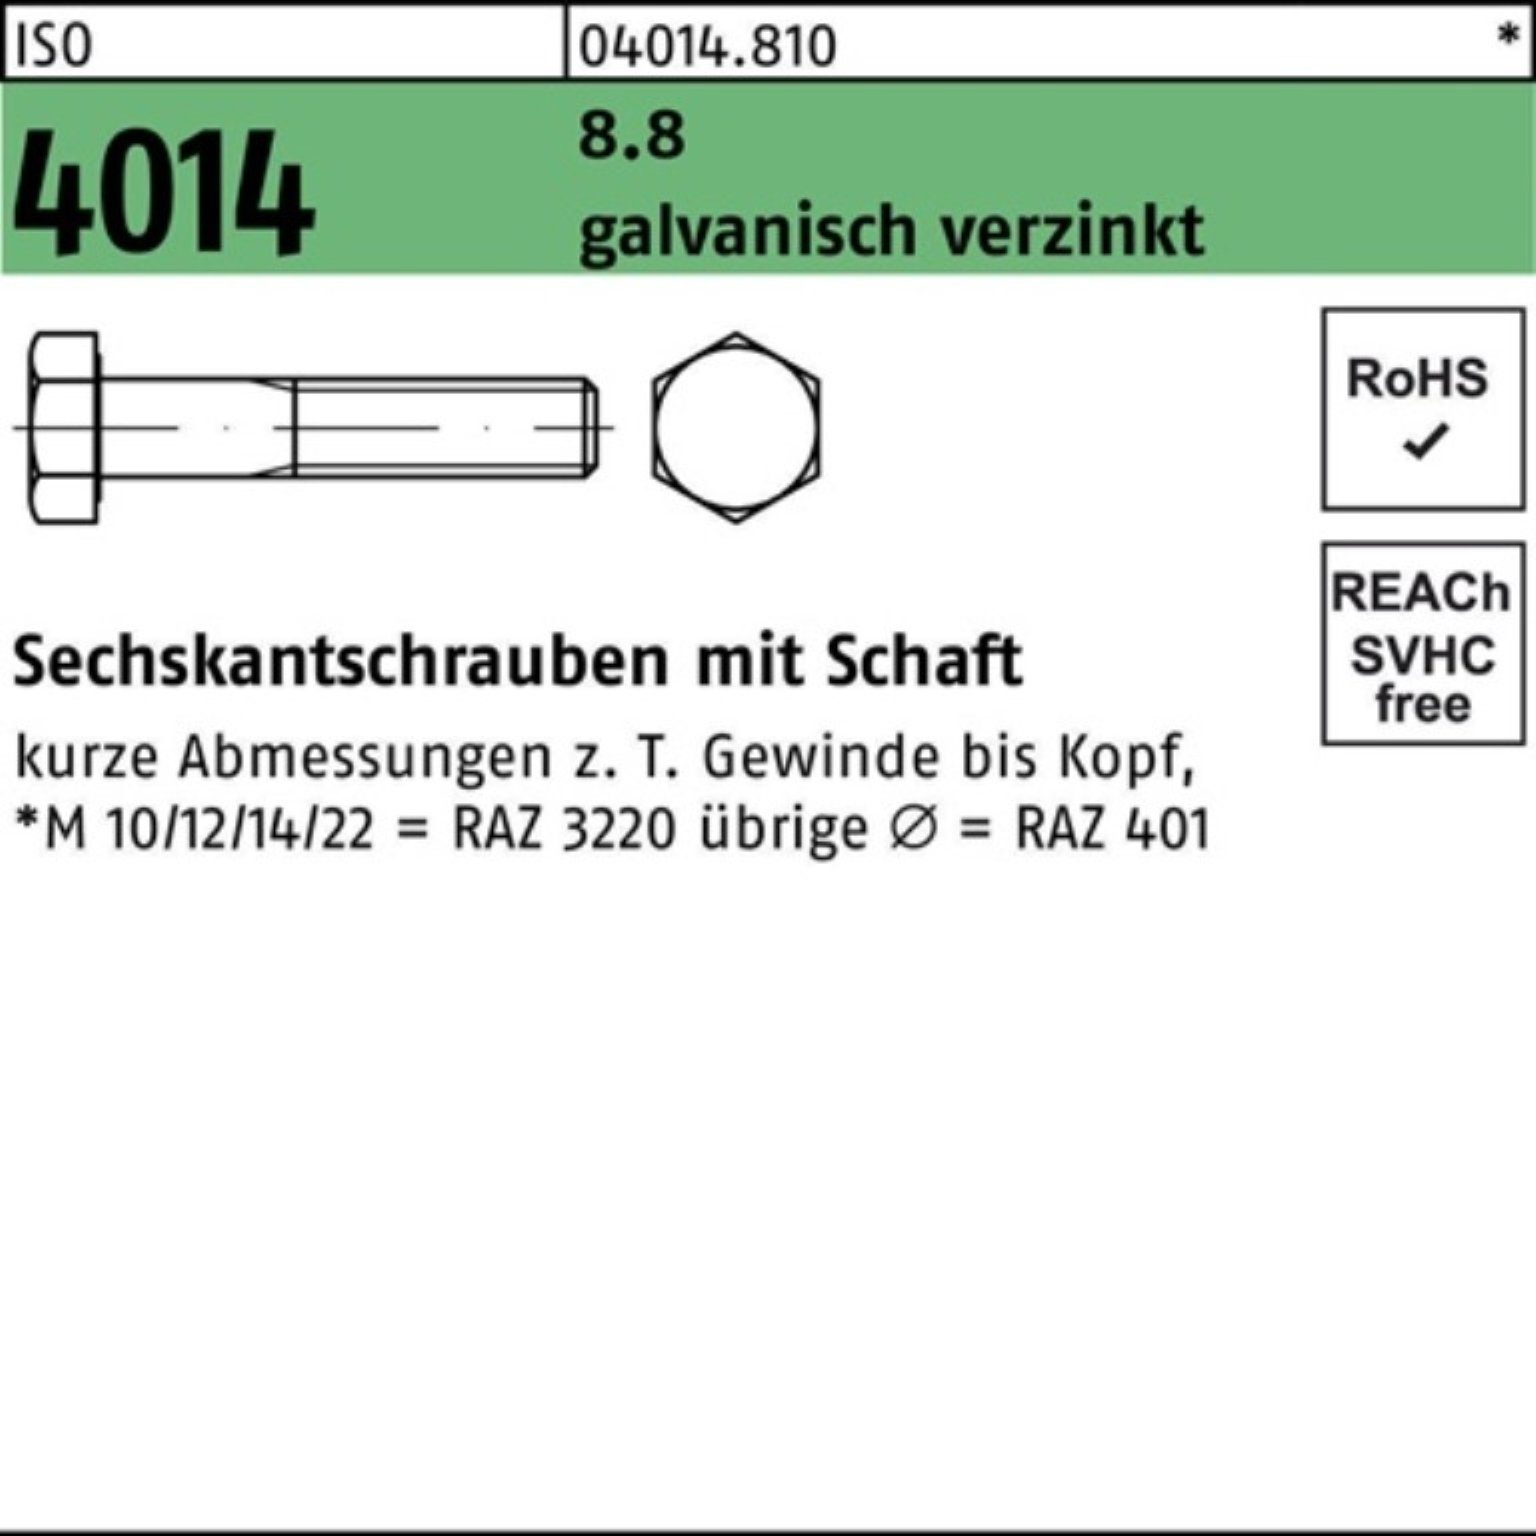 Pack 4014 130 Sechskantschraube Sechskantschraube Bufab 1 ISO Schaft galv.verz. 8.8 M42x 100er